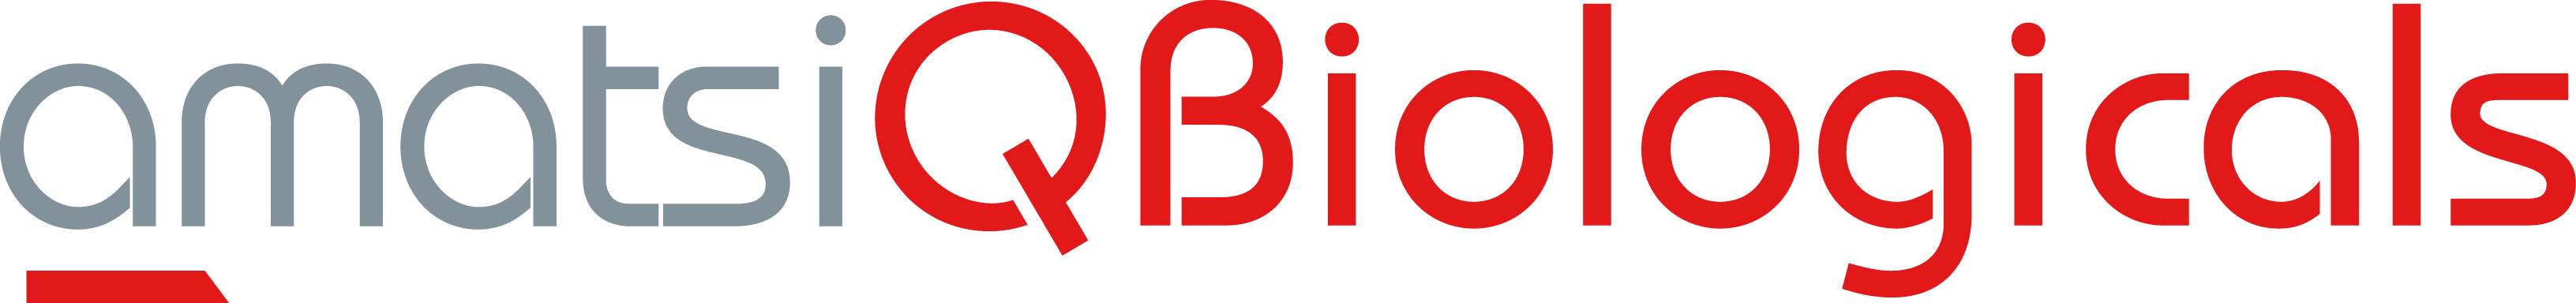 18 qb logo